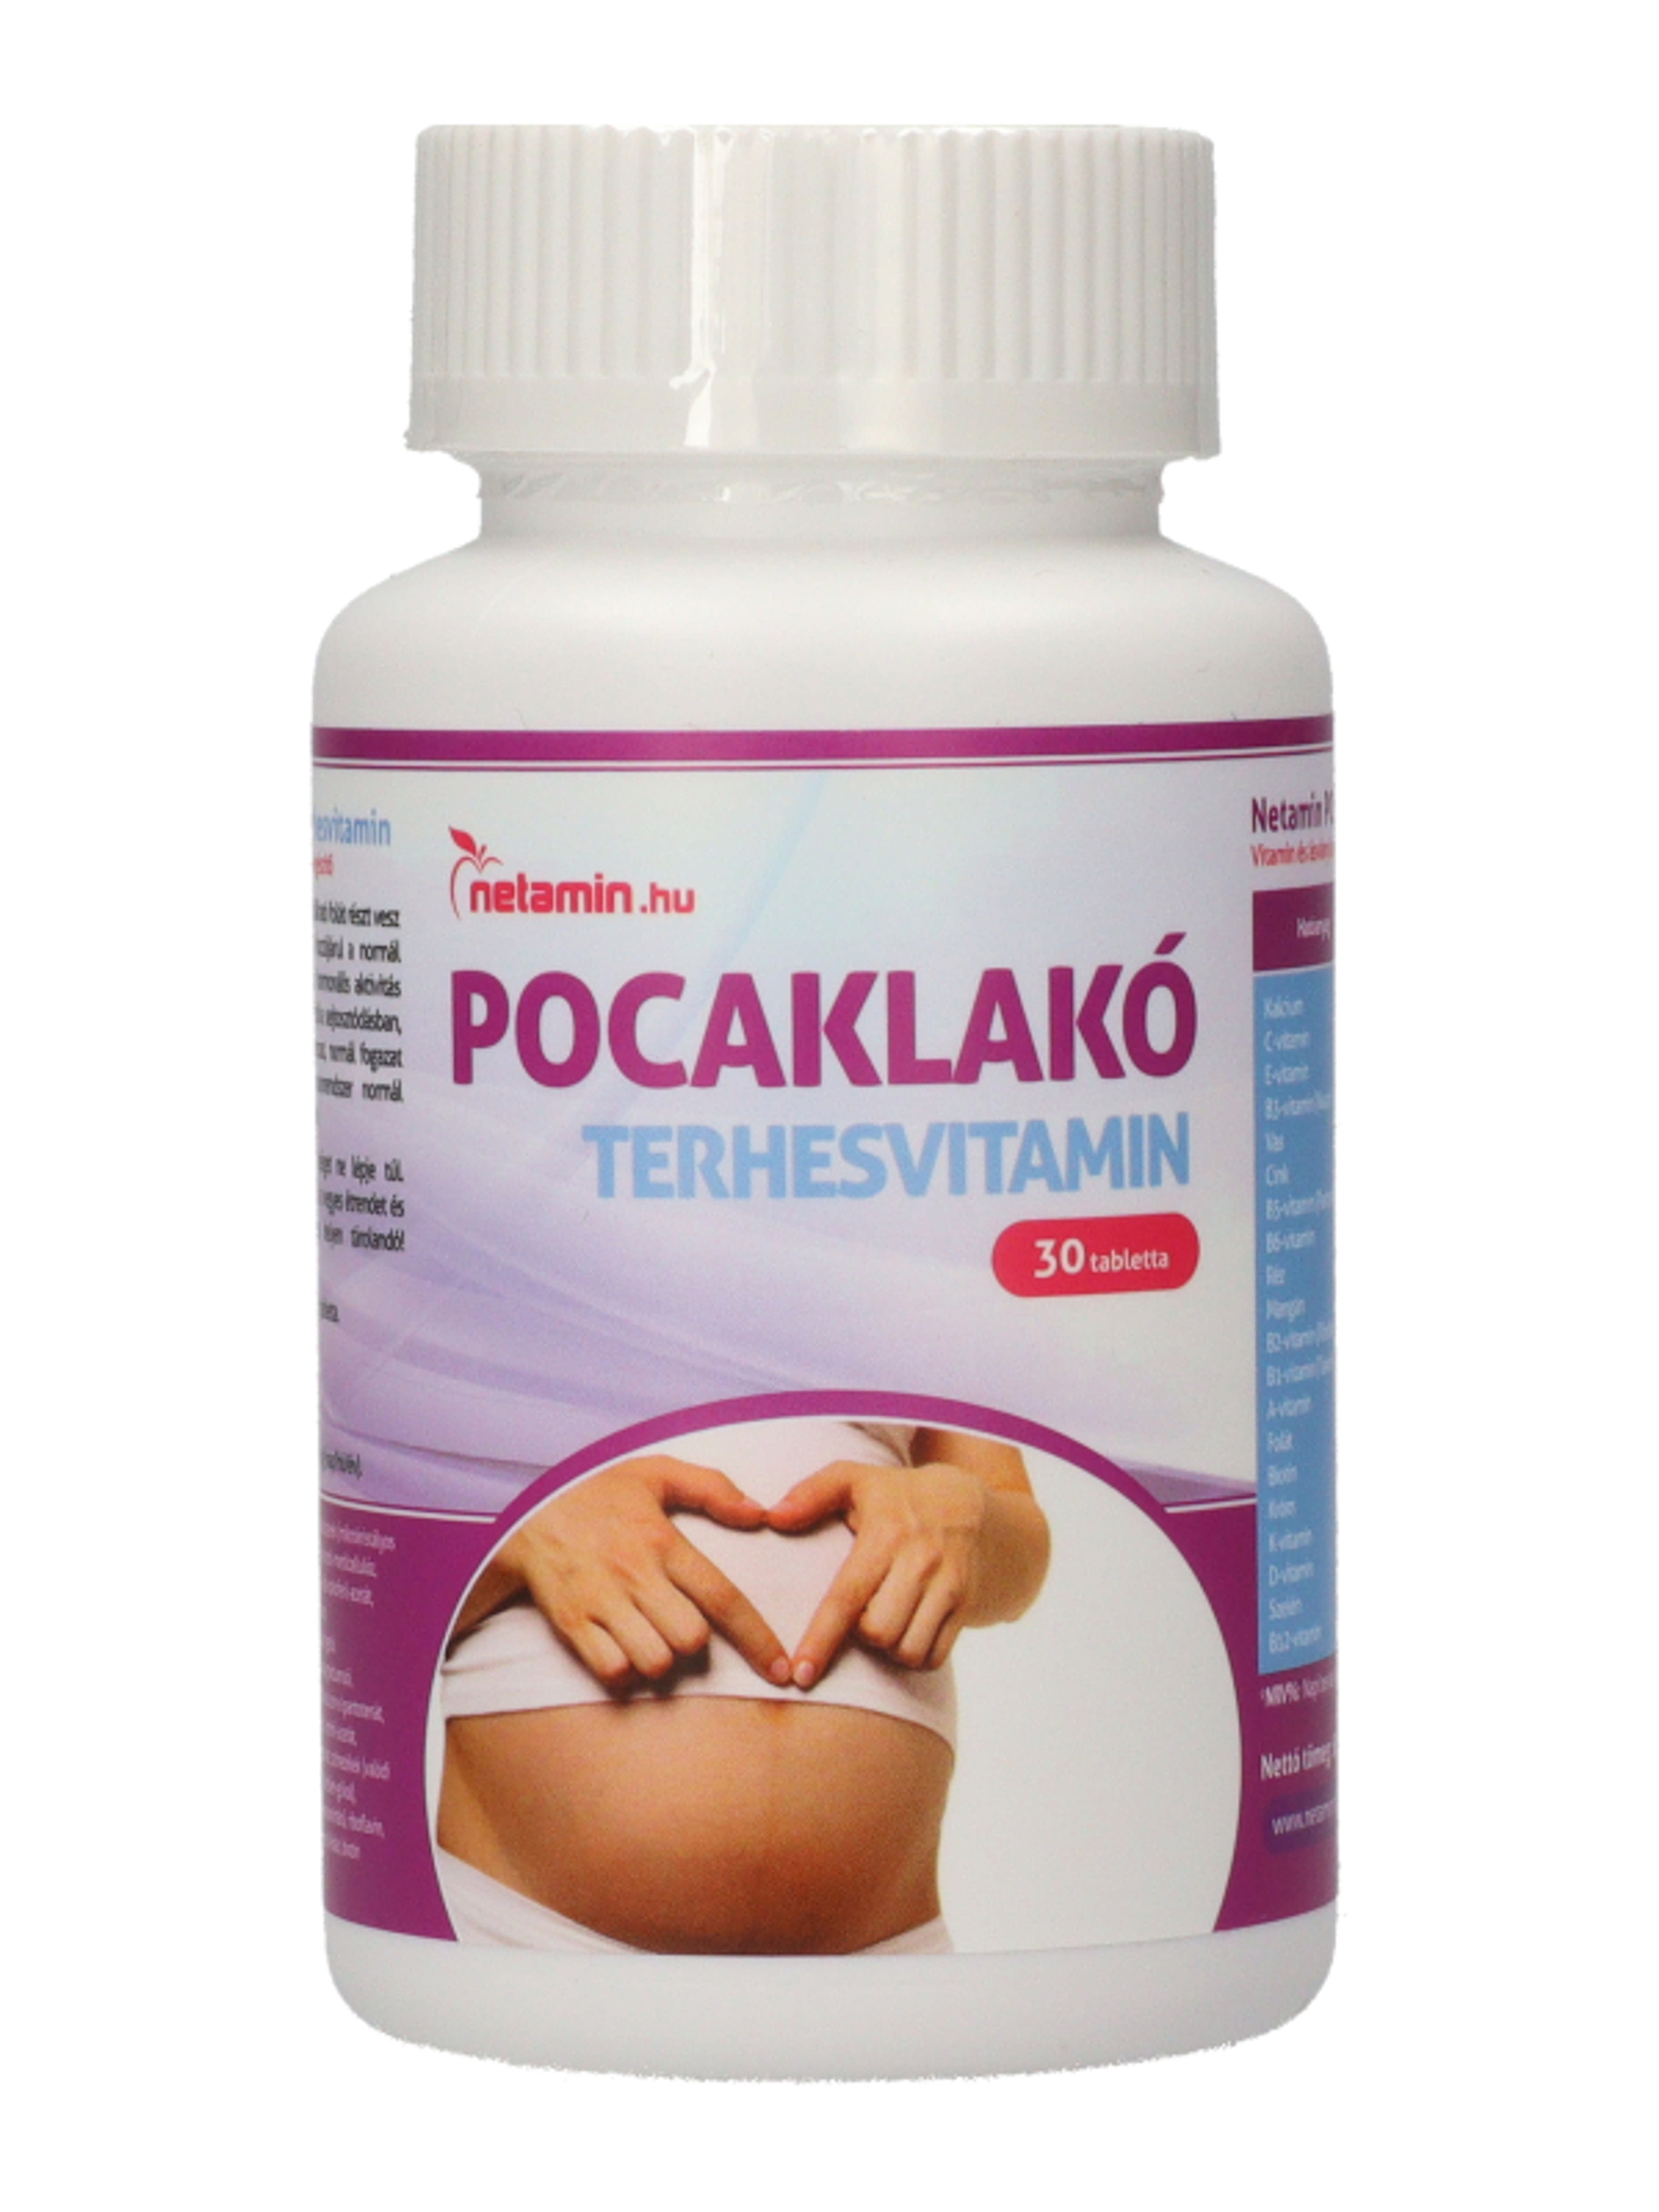 Netamin Pocaklakó terhesvitamin - 30 db-1